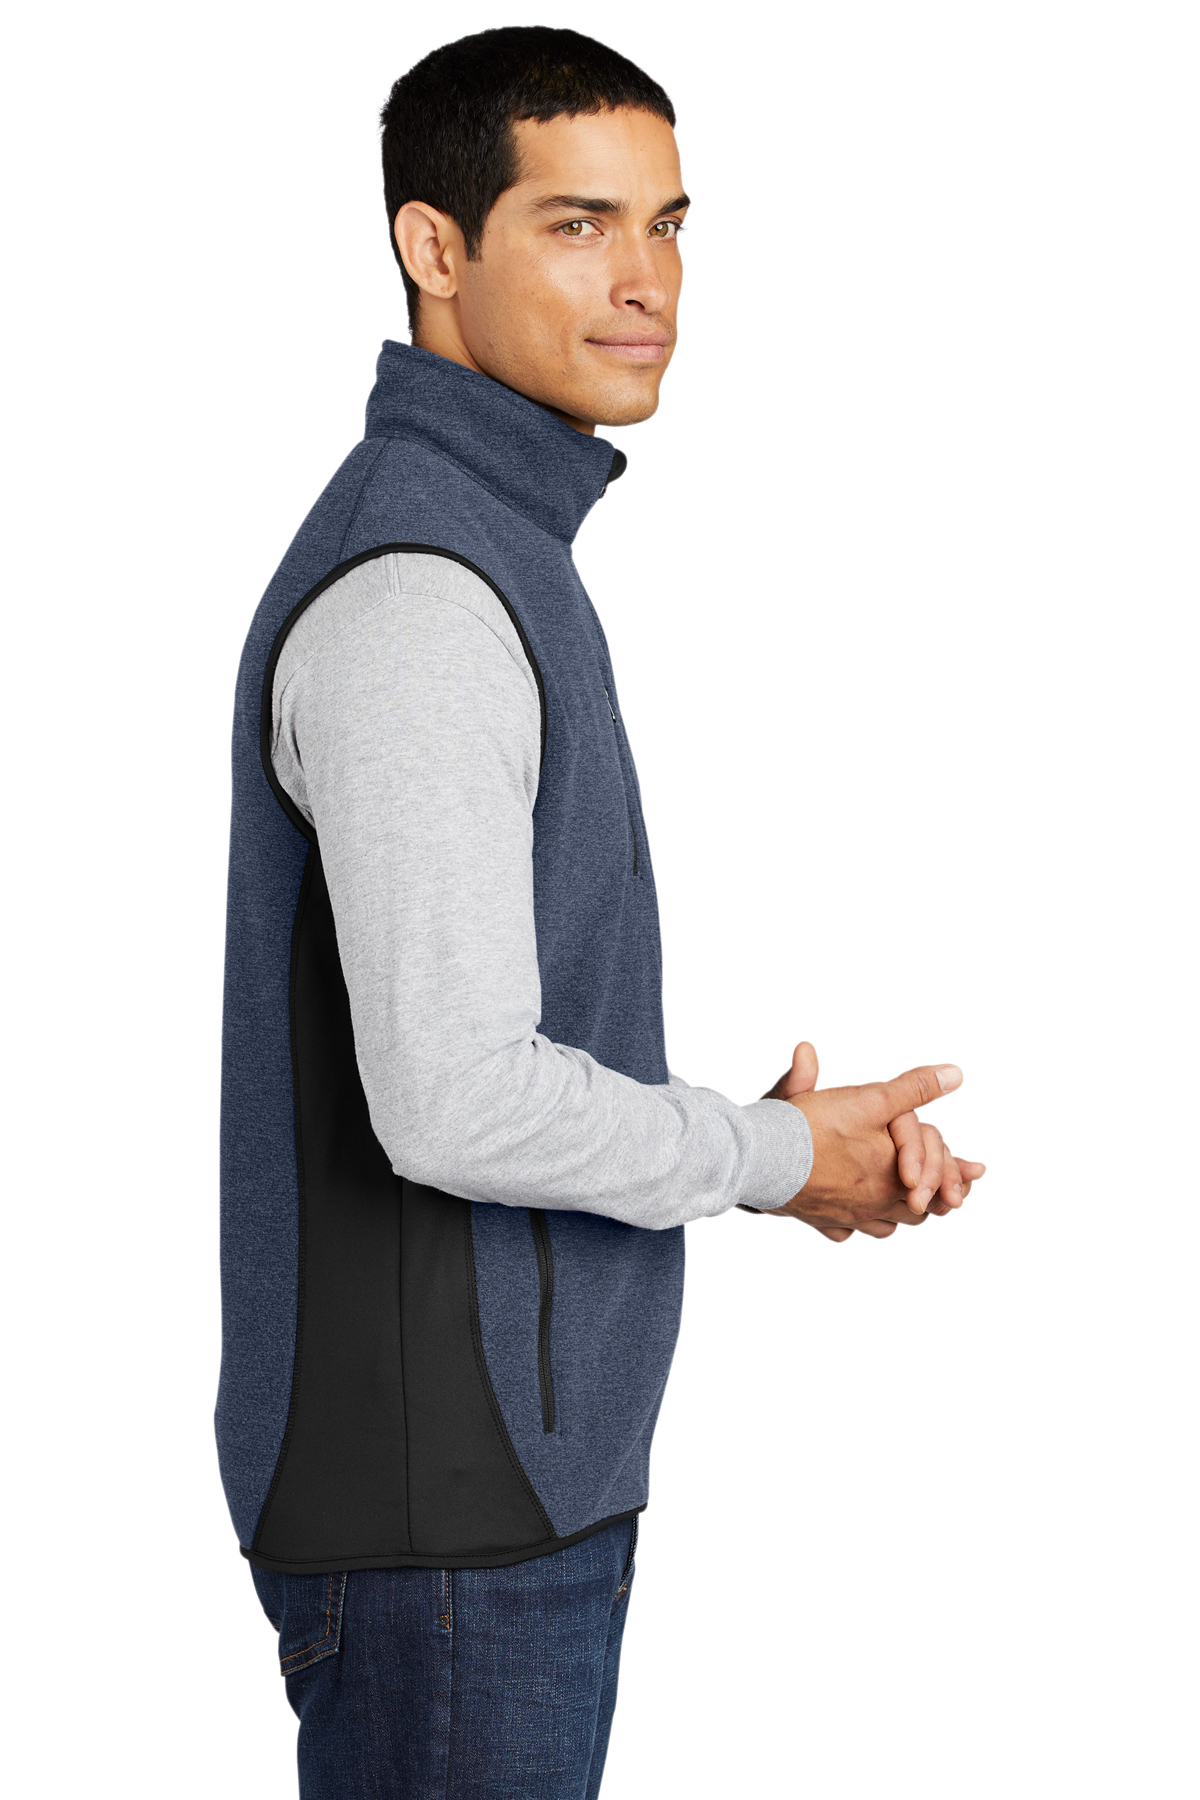 Port Authority R-Tek Pro Fleece Full-Zip Vest, Product